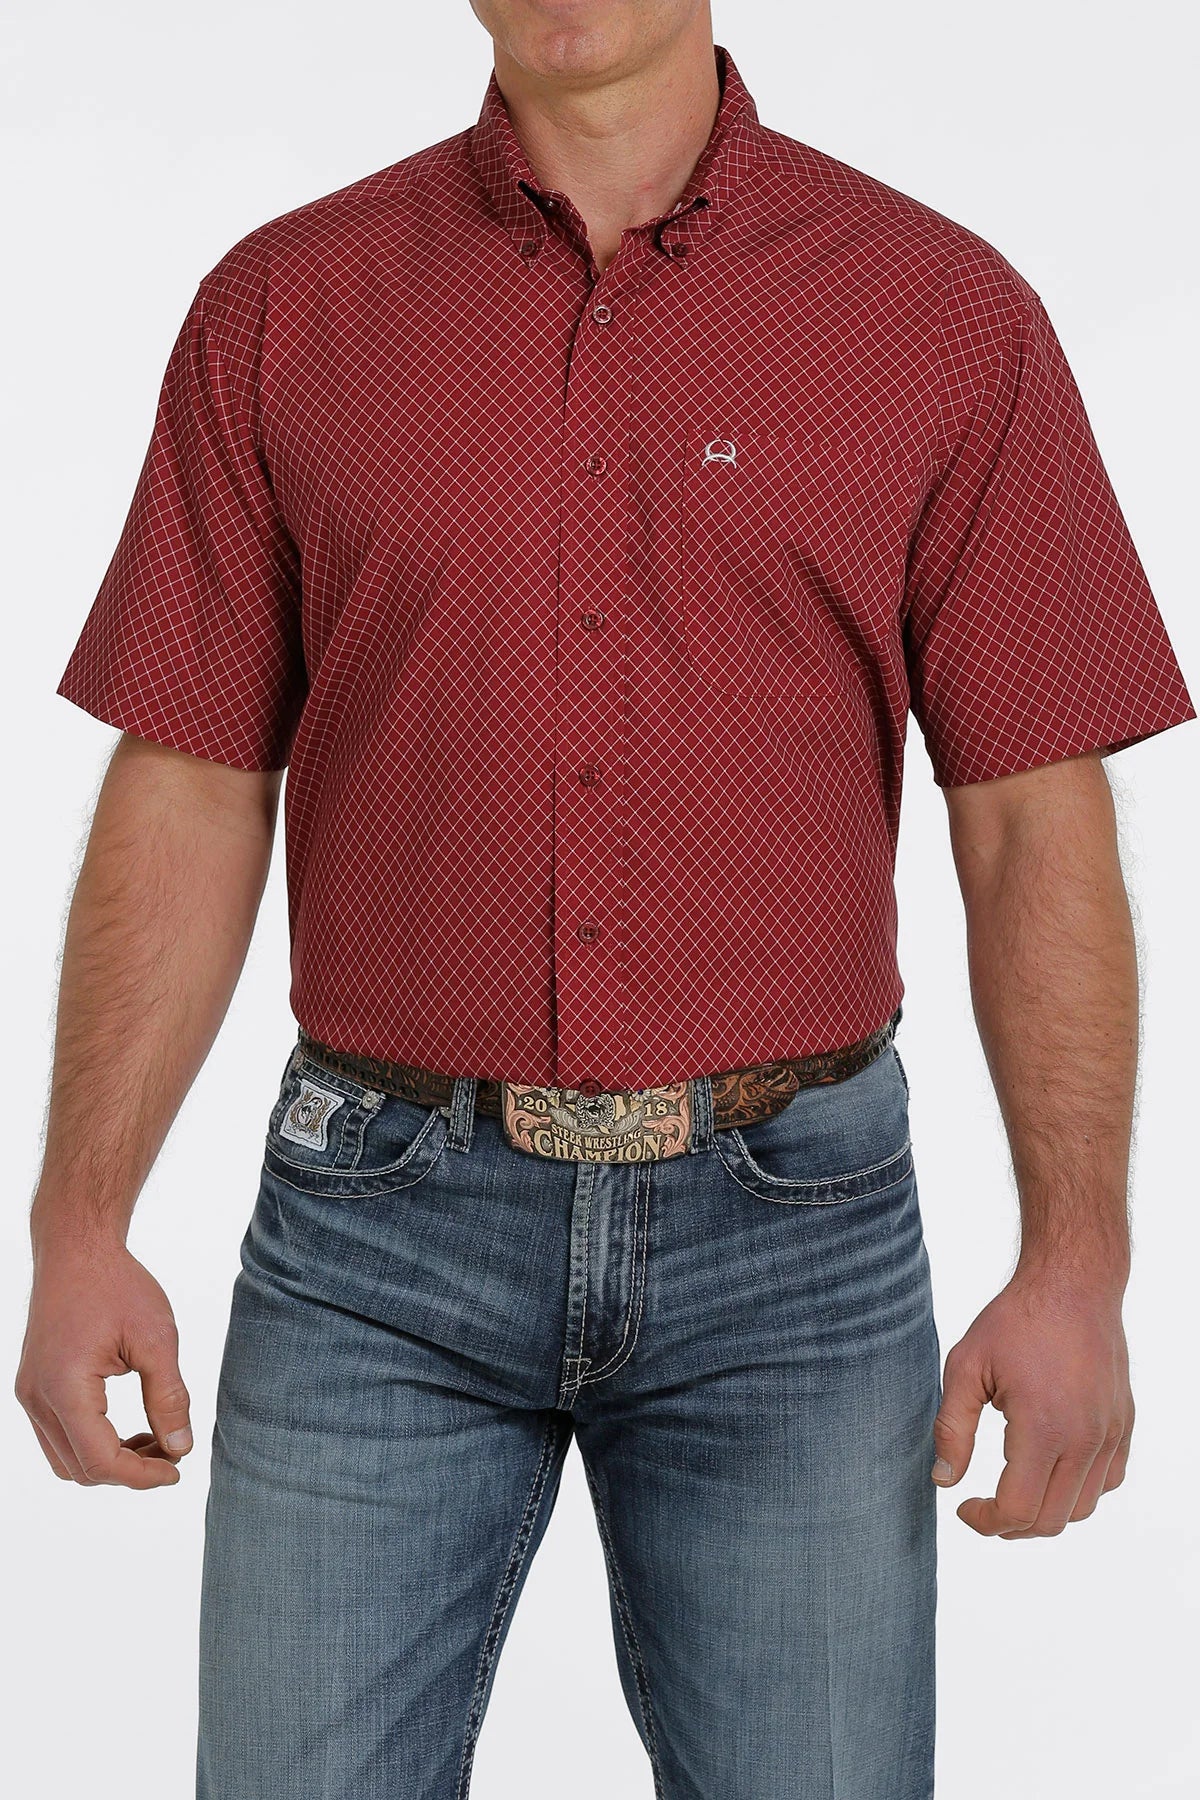 Cinch Mens ArenaFlex Short Sleeve Button-Down Shirt - Burgundy MTW1704095